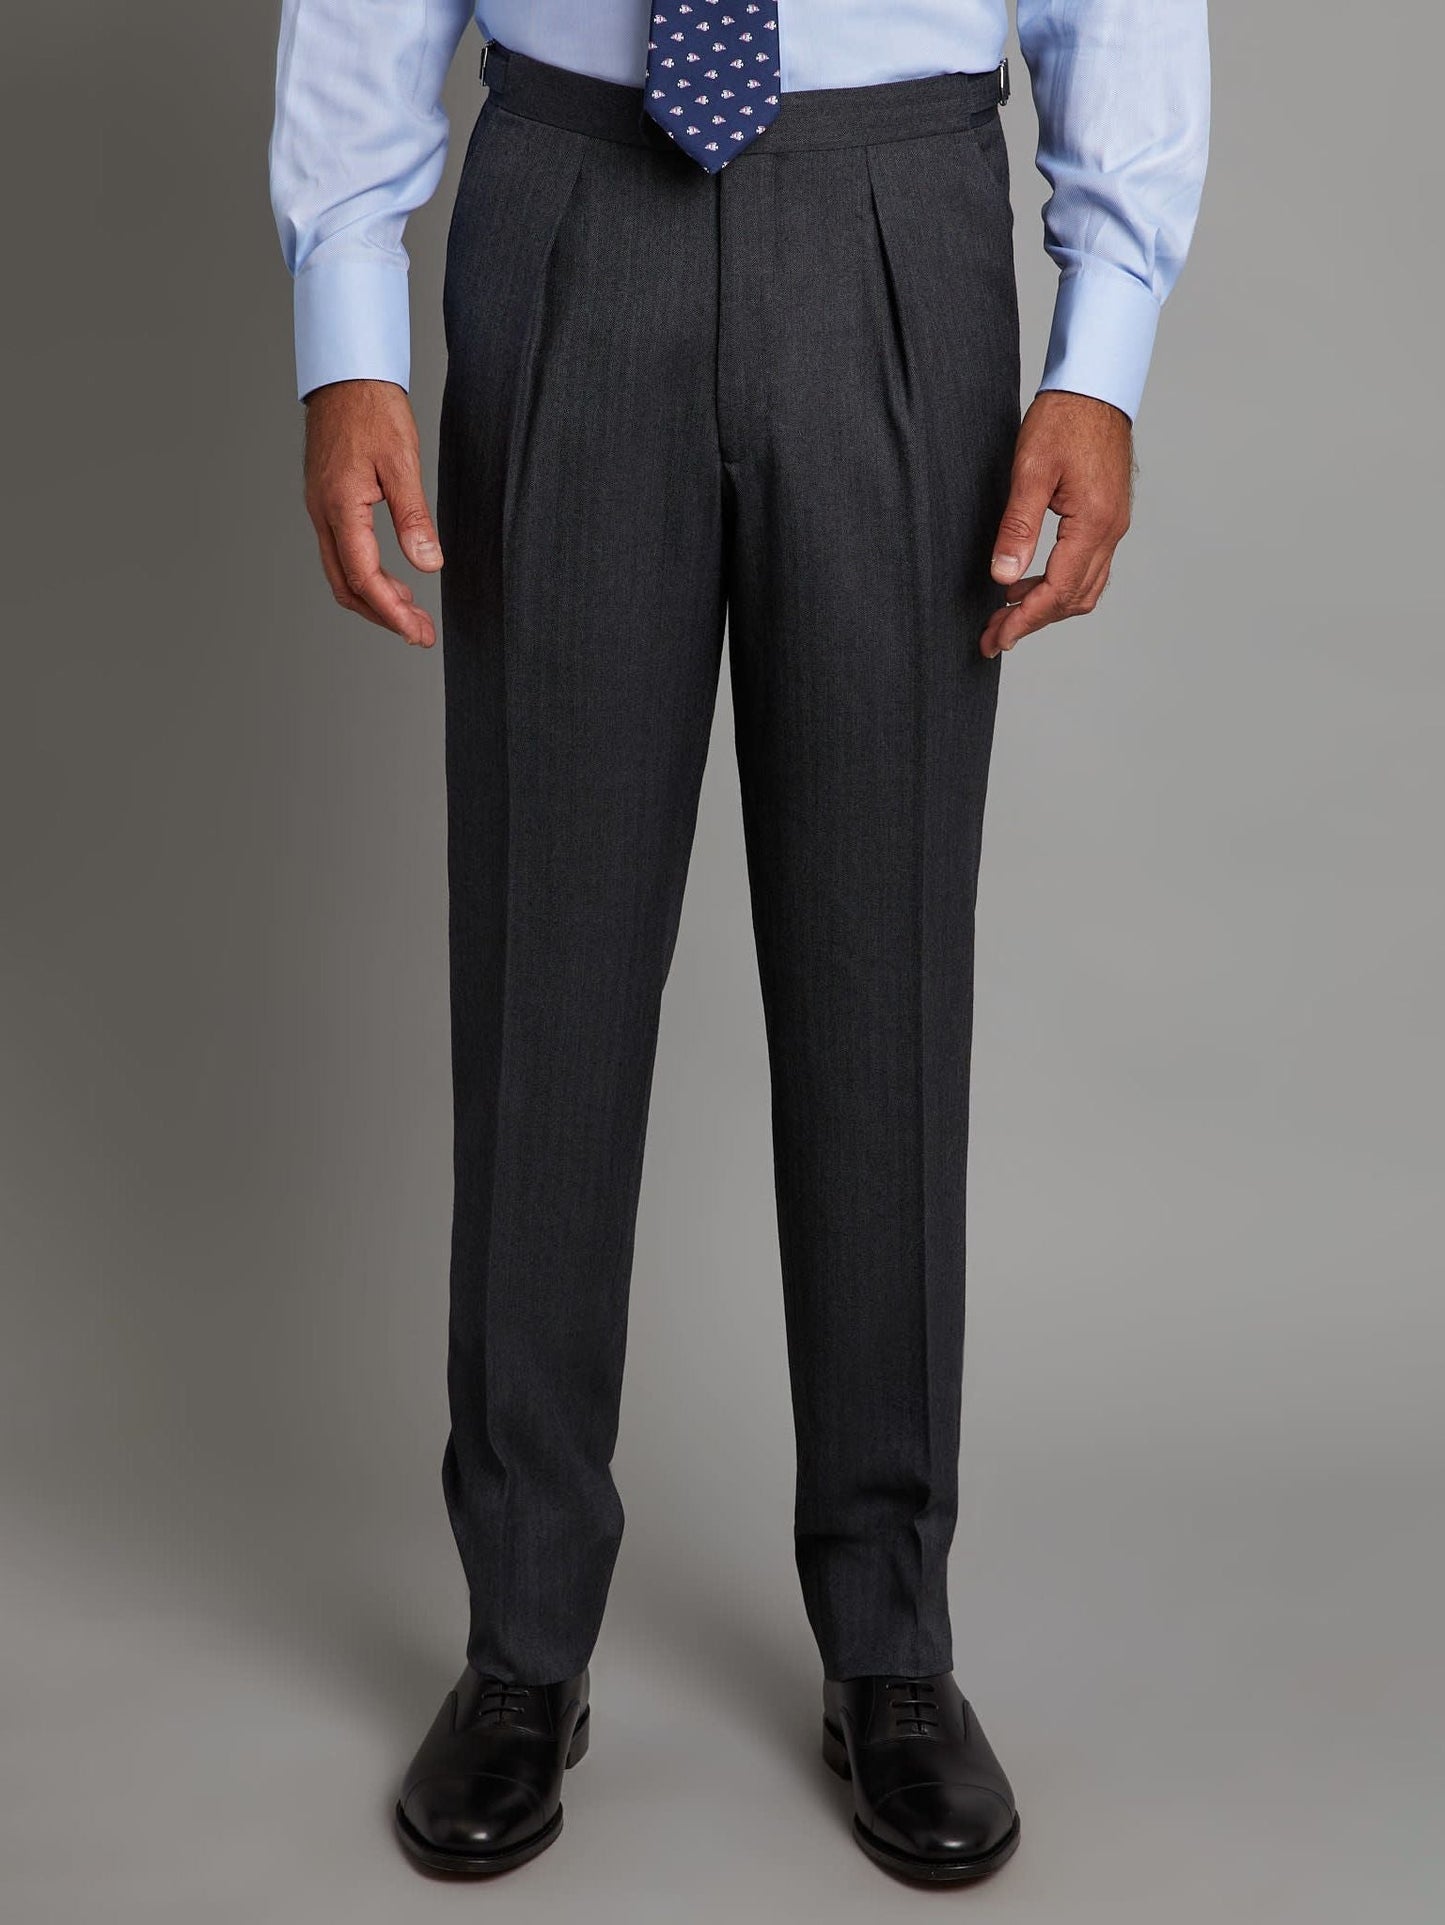 Pleated Suit Pants - Grey Herringbone